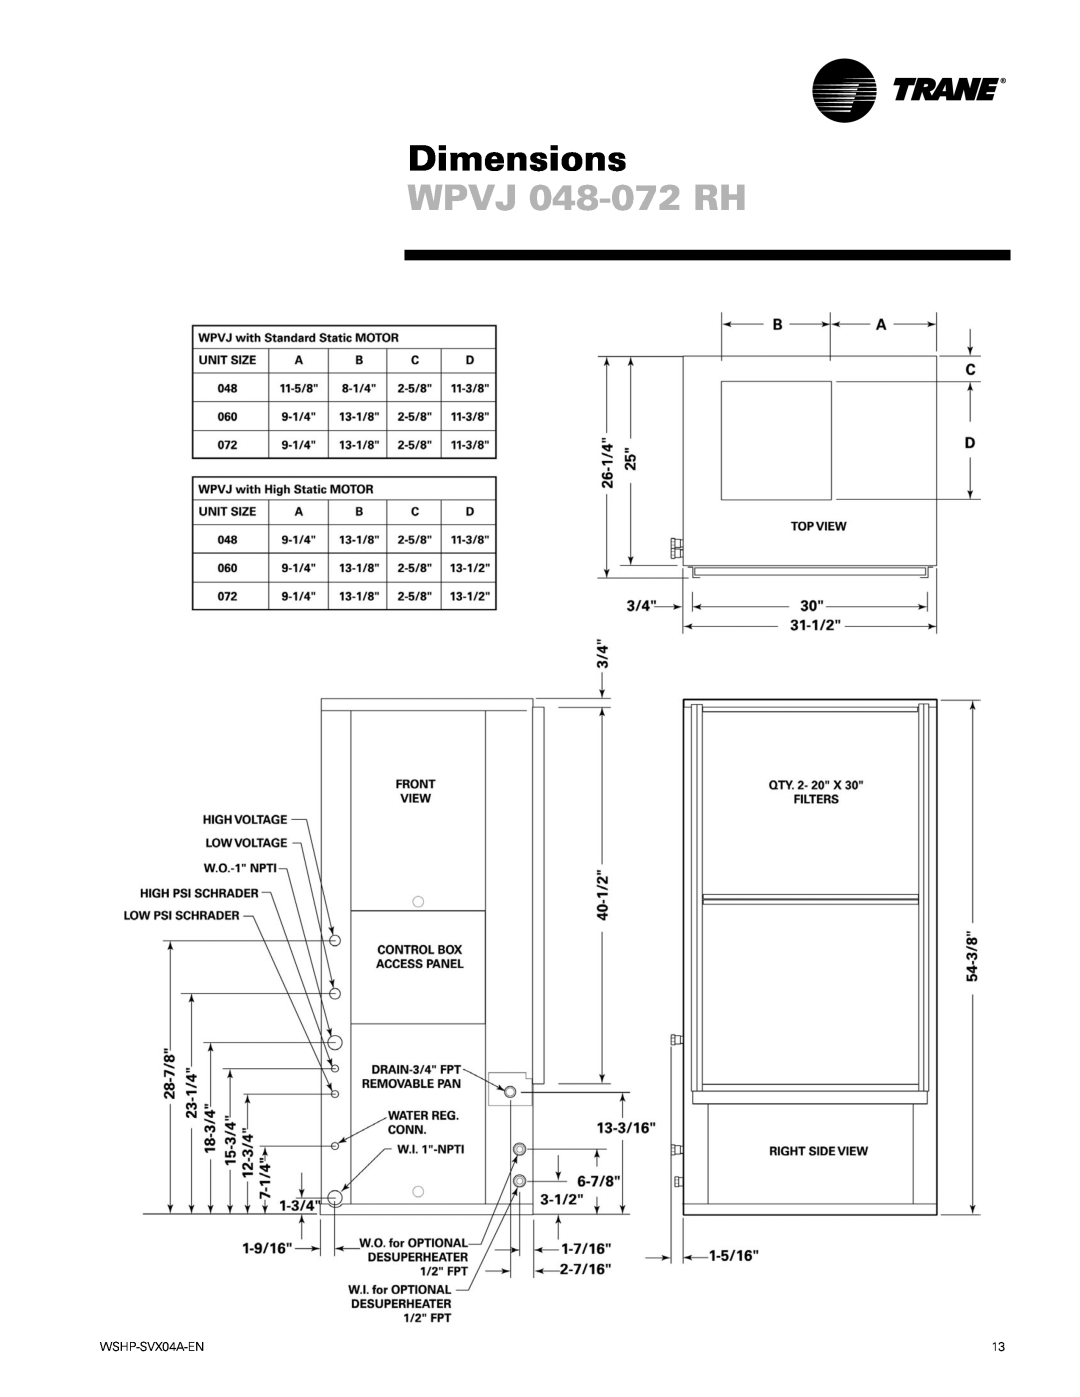 Trane WPHF manual WPVJ 048-072RH, Dimensions, WSHP-SVX04A-EN 